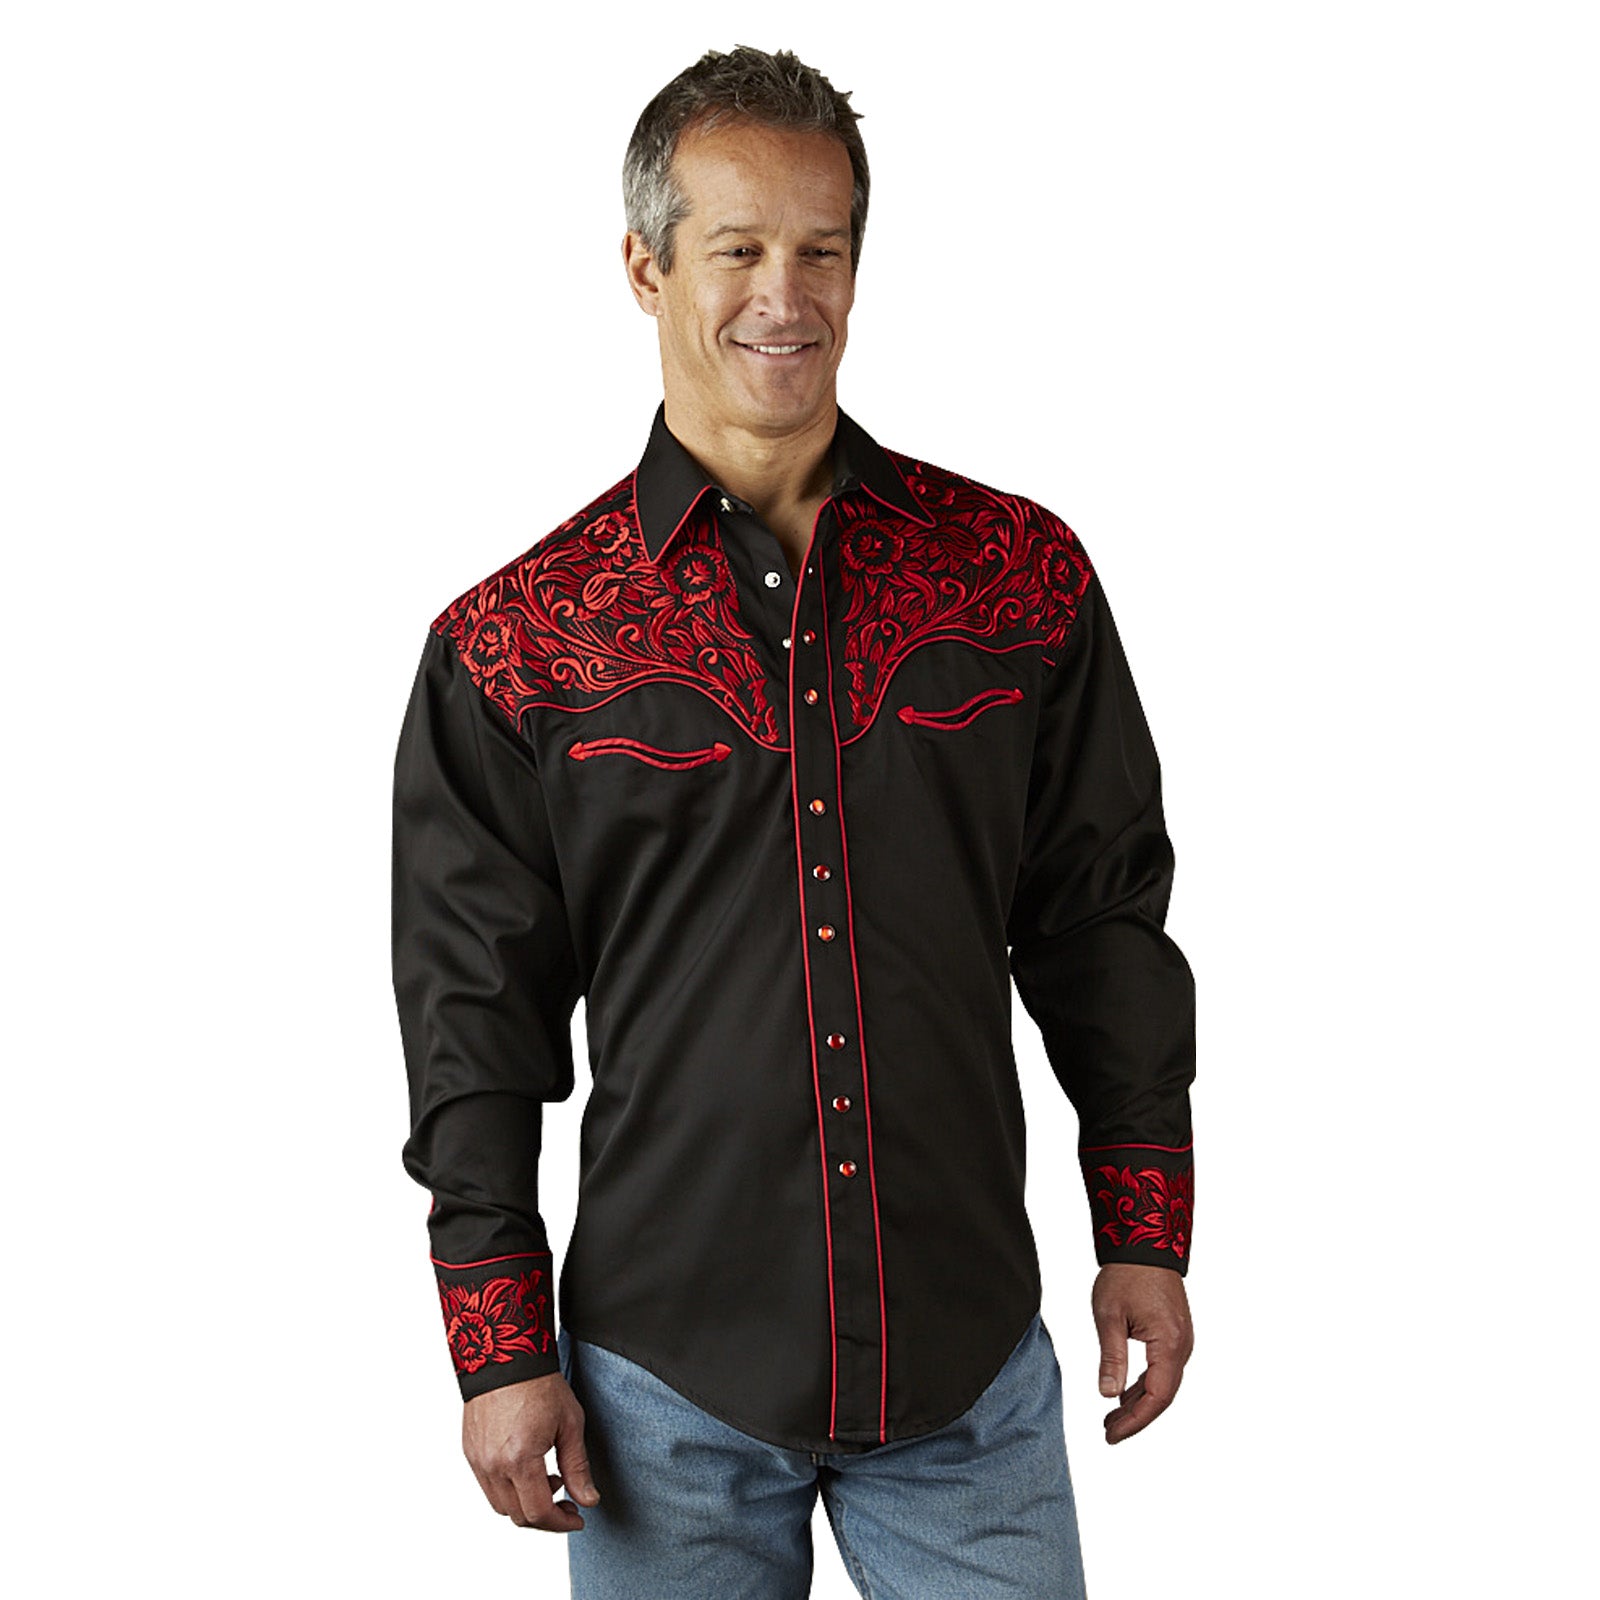 Men's Vintage Tooling Embroidered Black & Red Western Shirt - Rockmount